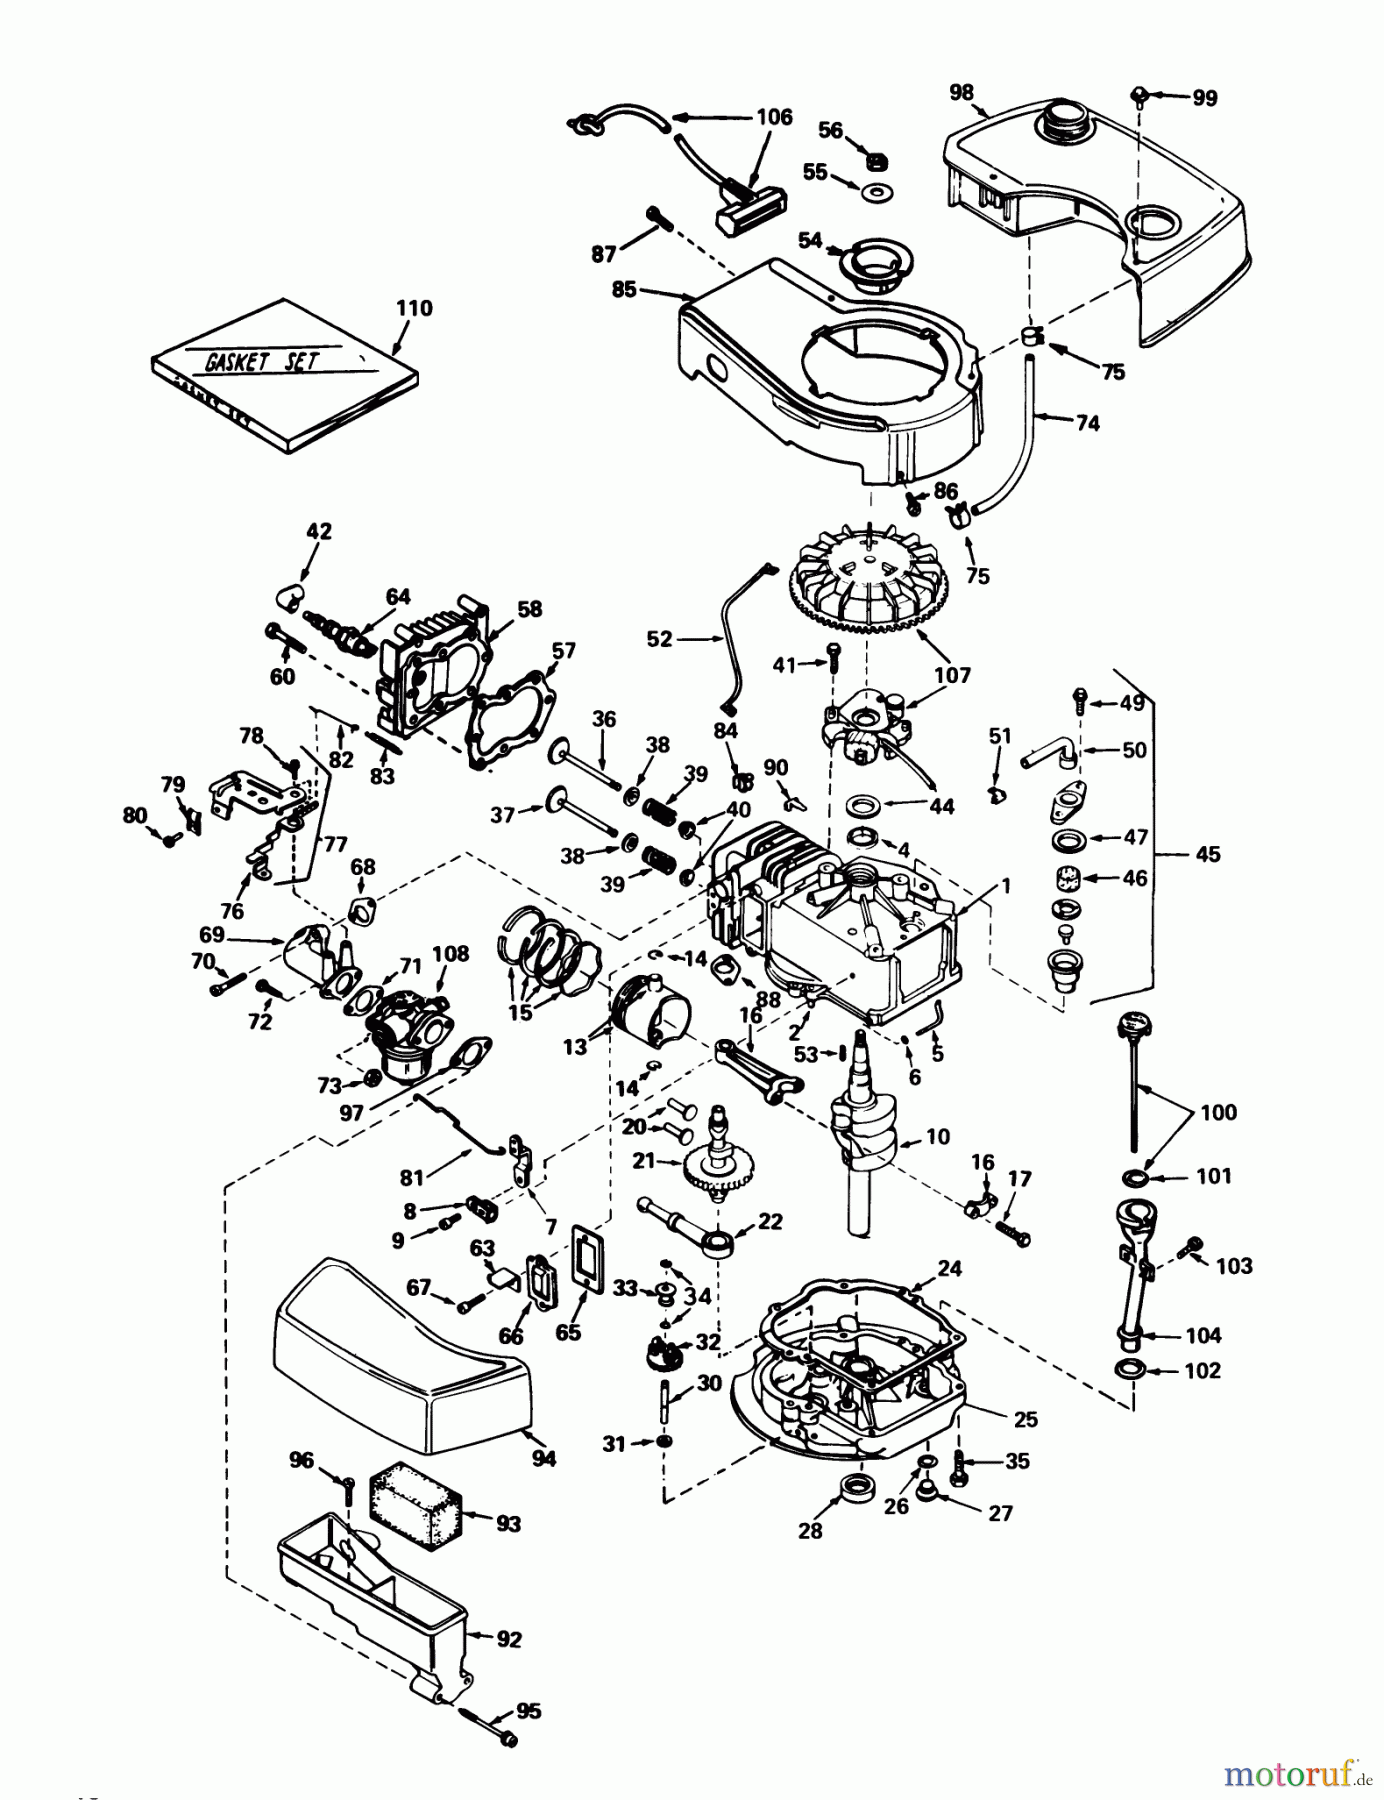  Toro Neu Mowers, Walk-Behind Seite 1 20690 - Toro Lawnmower, 1978 (8000001-8999999) ENGINE TECUMSEH MODEL NO. TNT 100-10048B